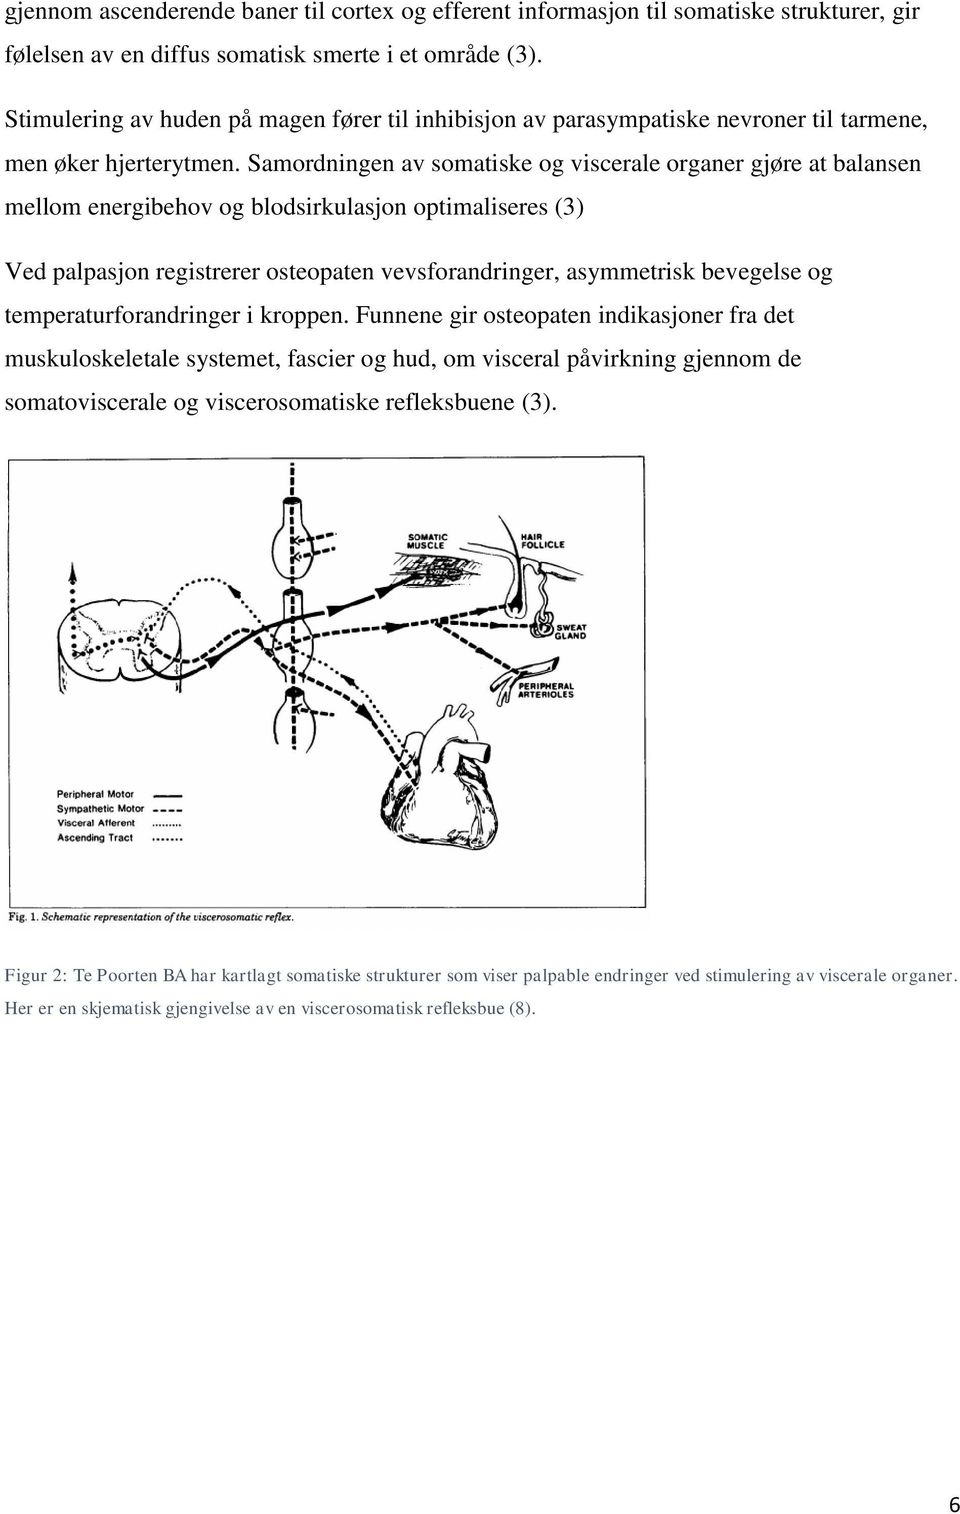 Samordningen av somatiske og viscerale organer gjøre at balansen mellom energibehov og blodsirkulasjon optimaliseres (3) Ved palpasjon registrerer osteopaten vevsforandringer, asymmetrisk bevegelse